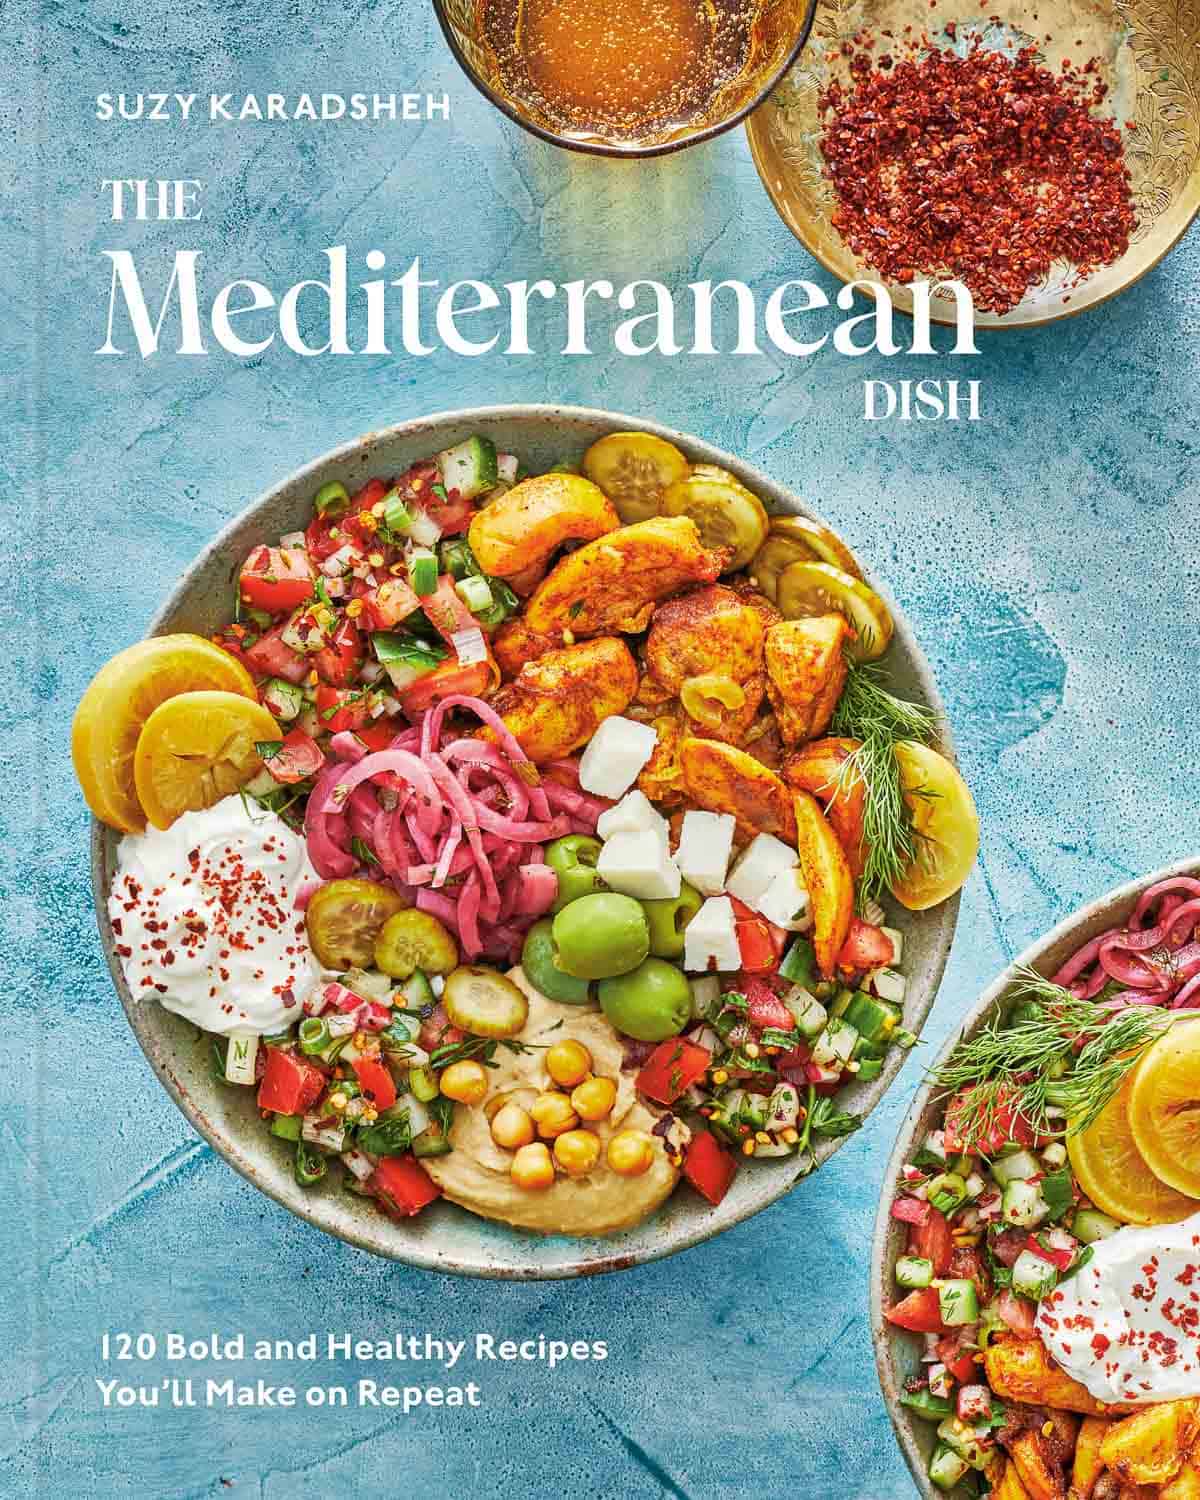 The Mediterranean Dish Cookbook - The Mediterranean Dish